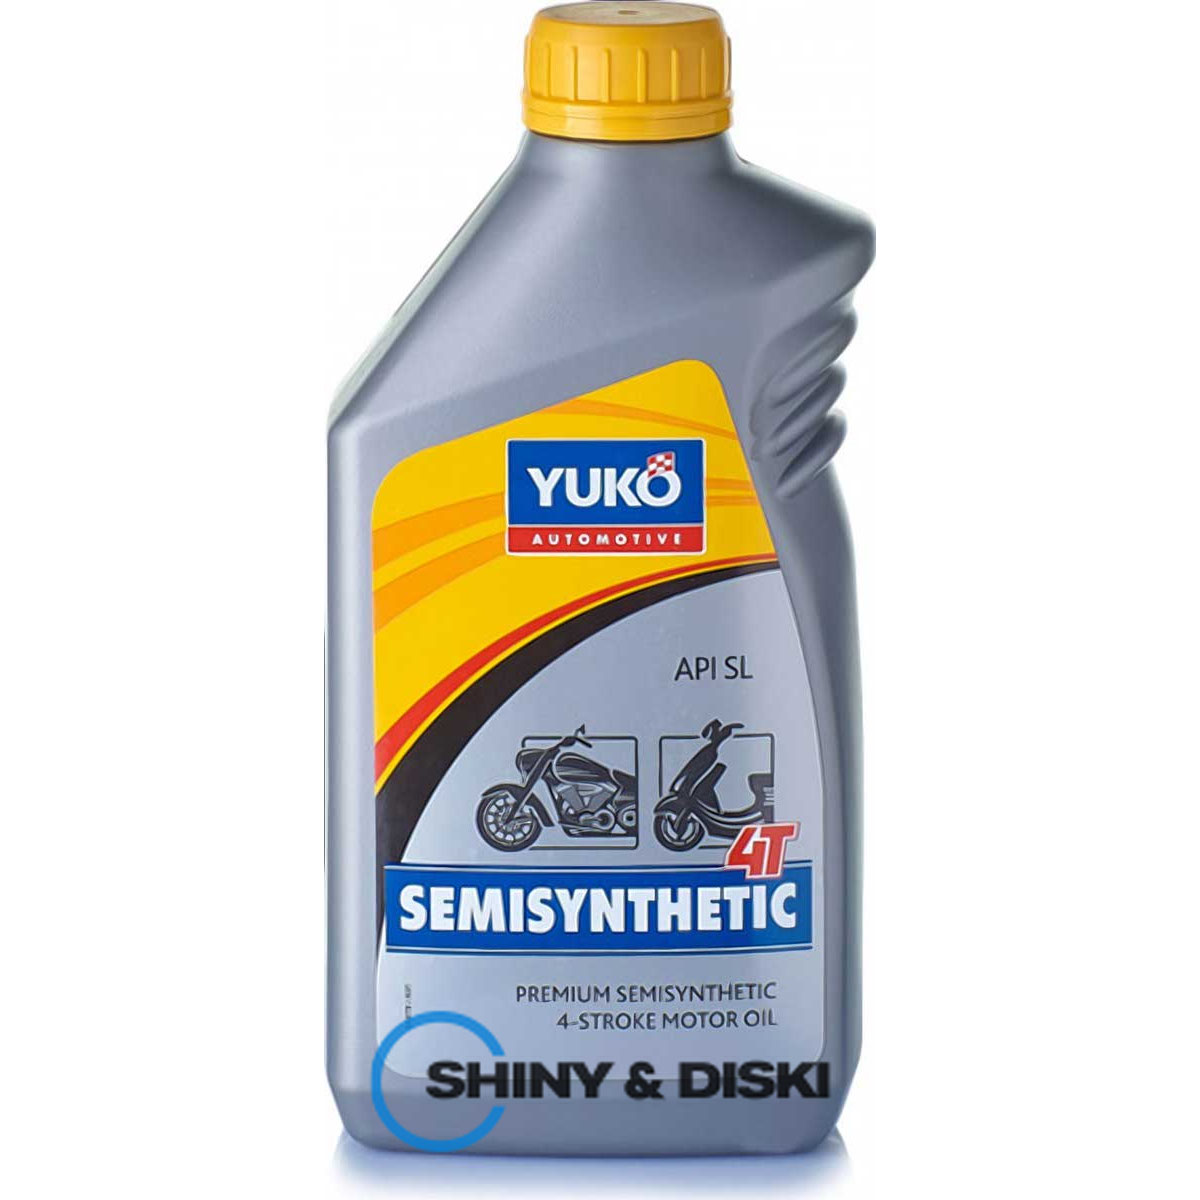 yuko semisynthetic